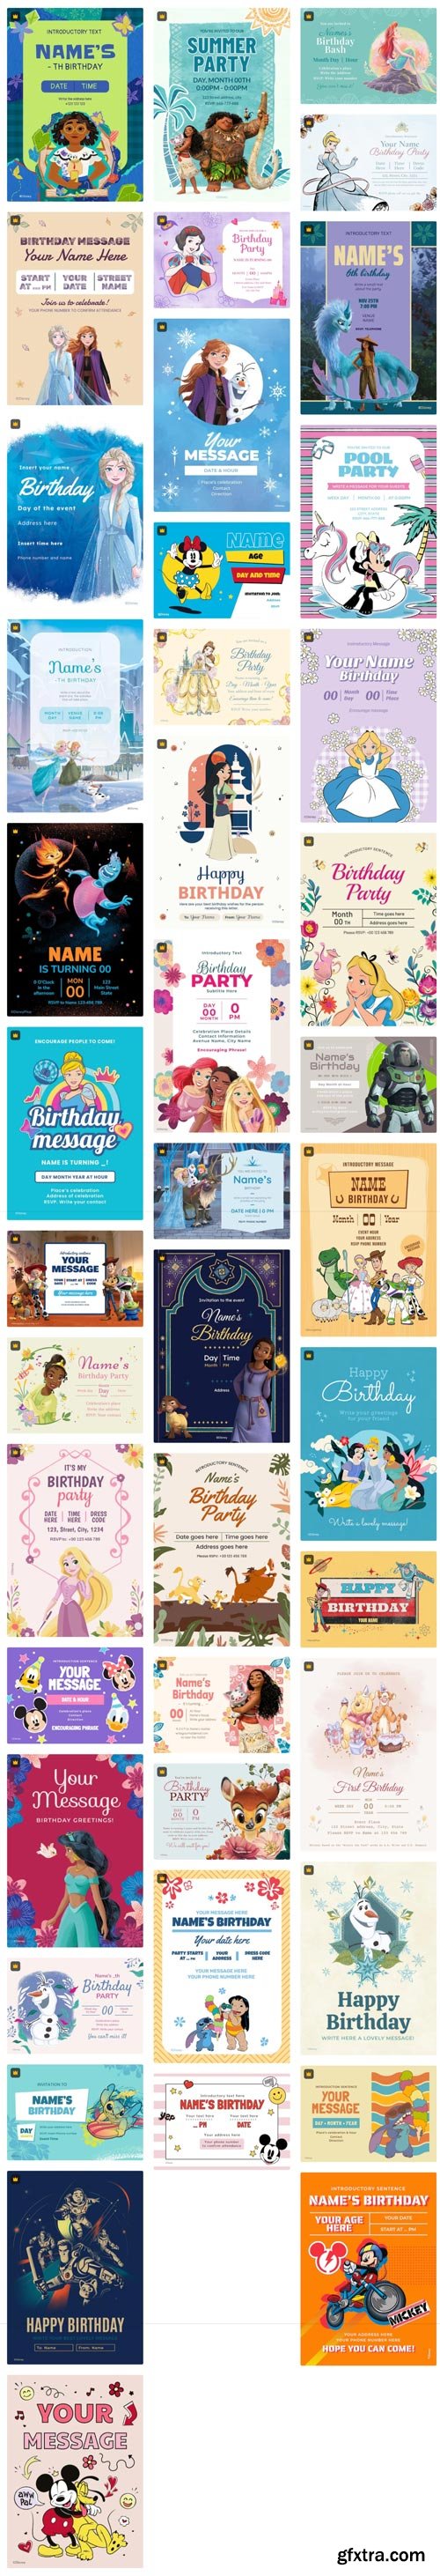 Premium Vector Collections - Disney Pixar Birthday Invitations - 43xEPS